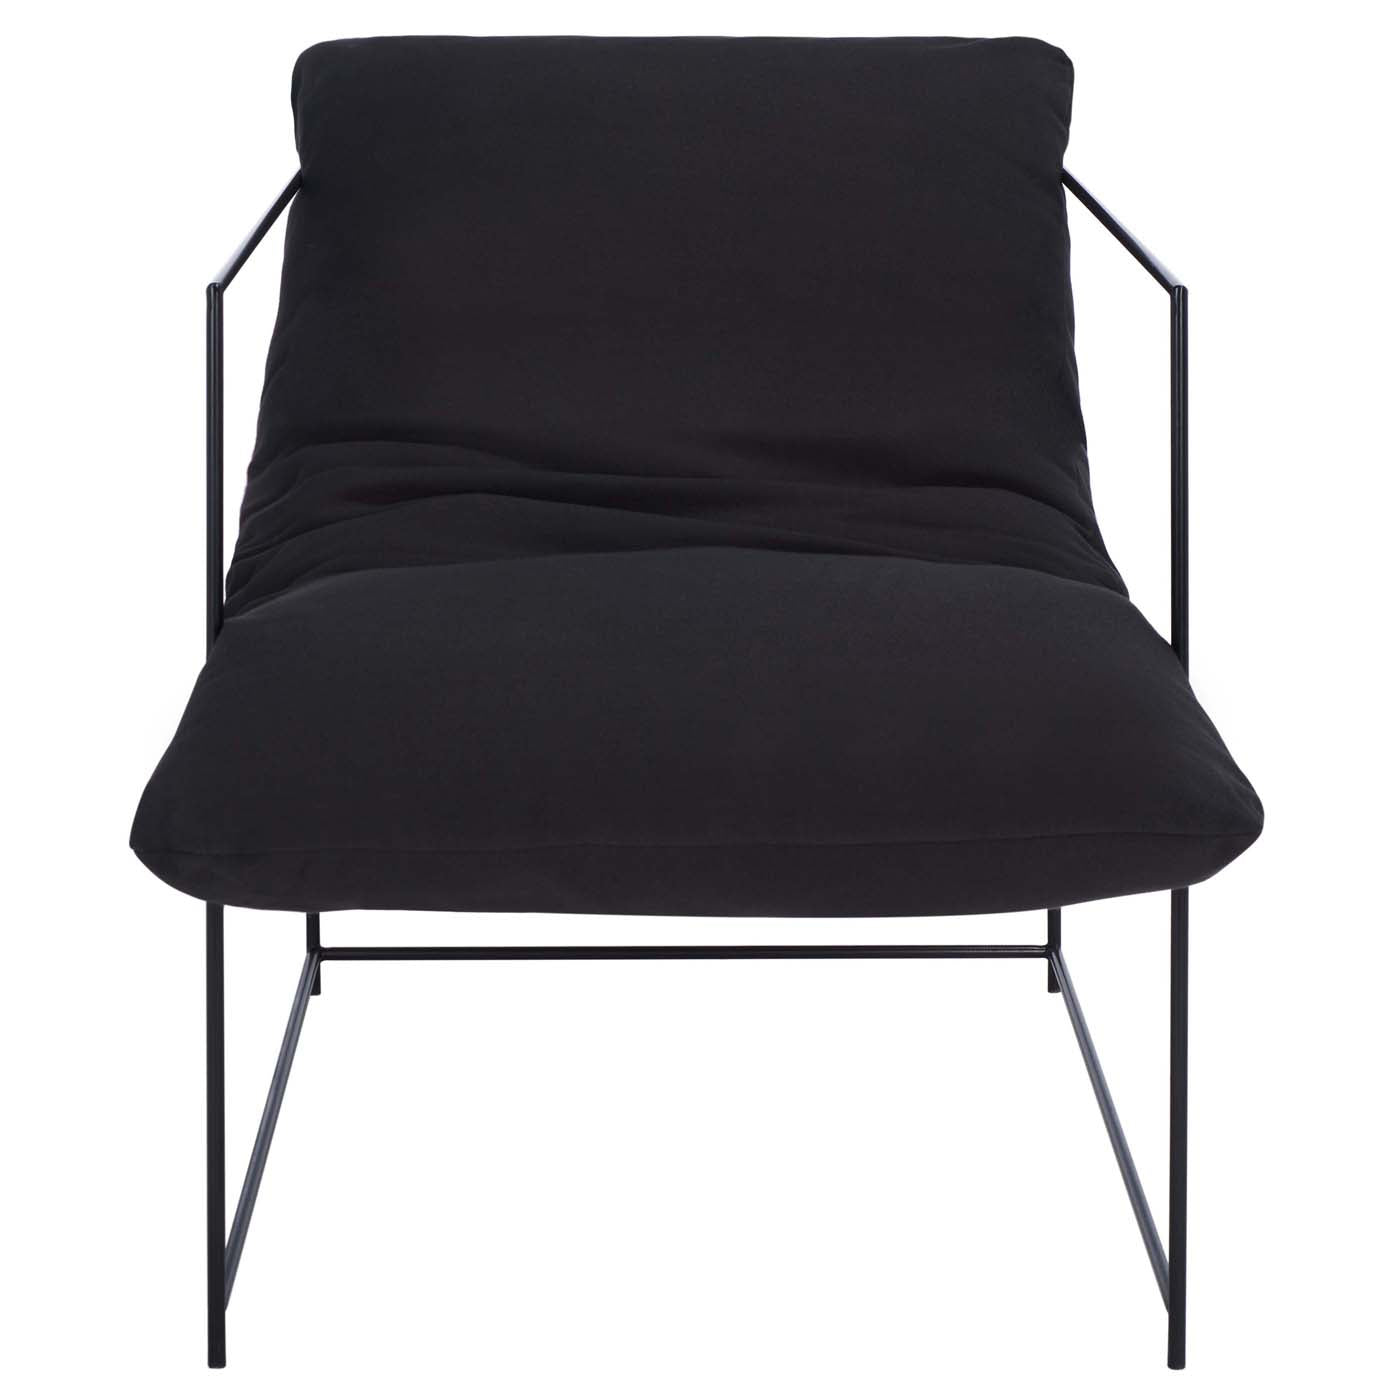 Safavieh Portland Pillow Top Accent Chair , ACH4511 - Black / Black